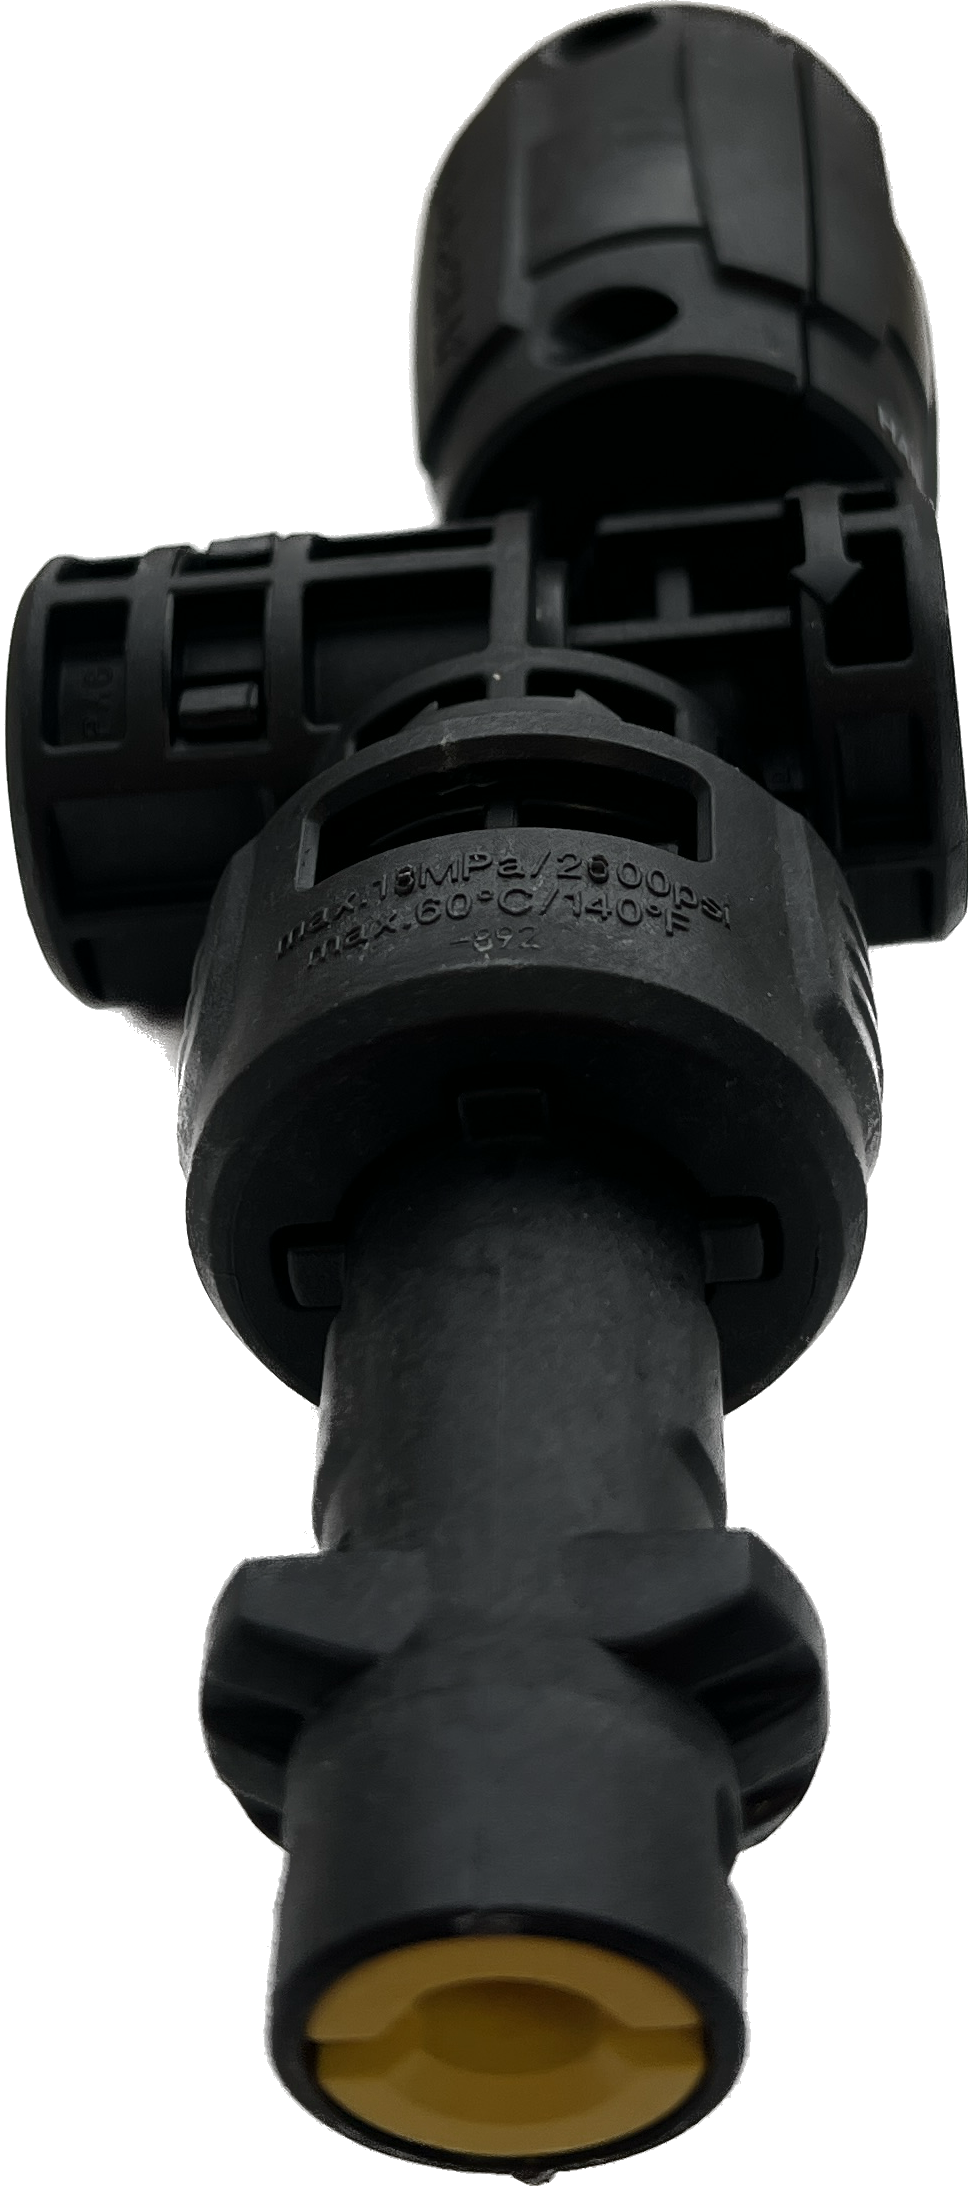 Karcher Струйная трубка 360° VP 180 S (K2-K7)